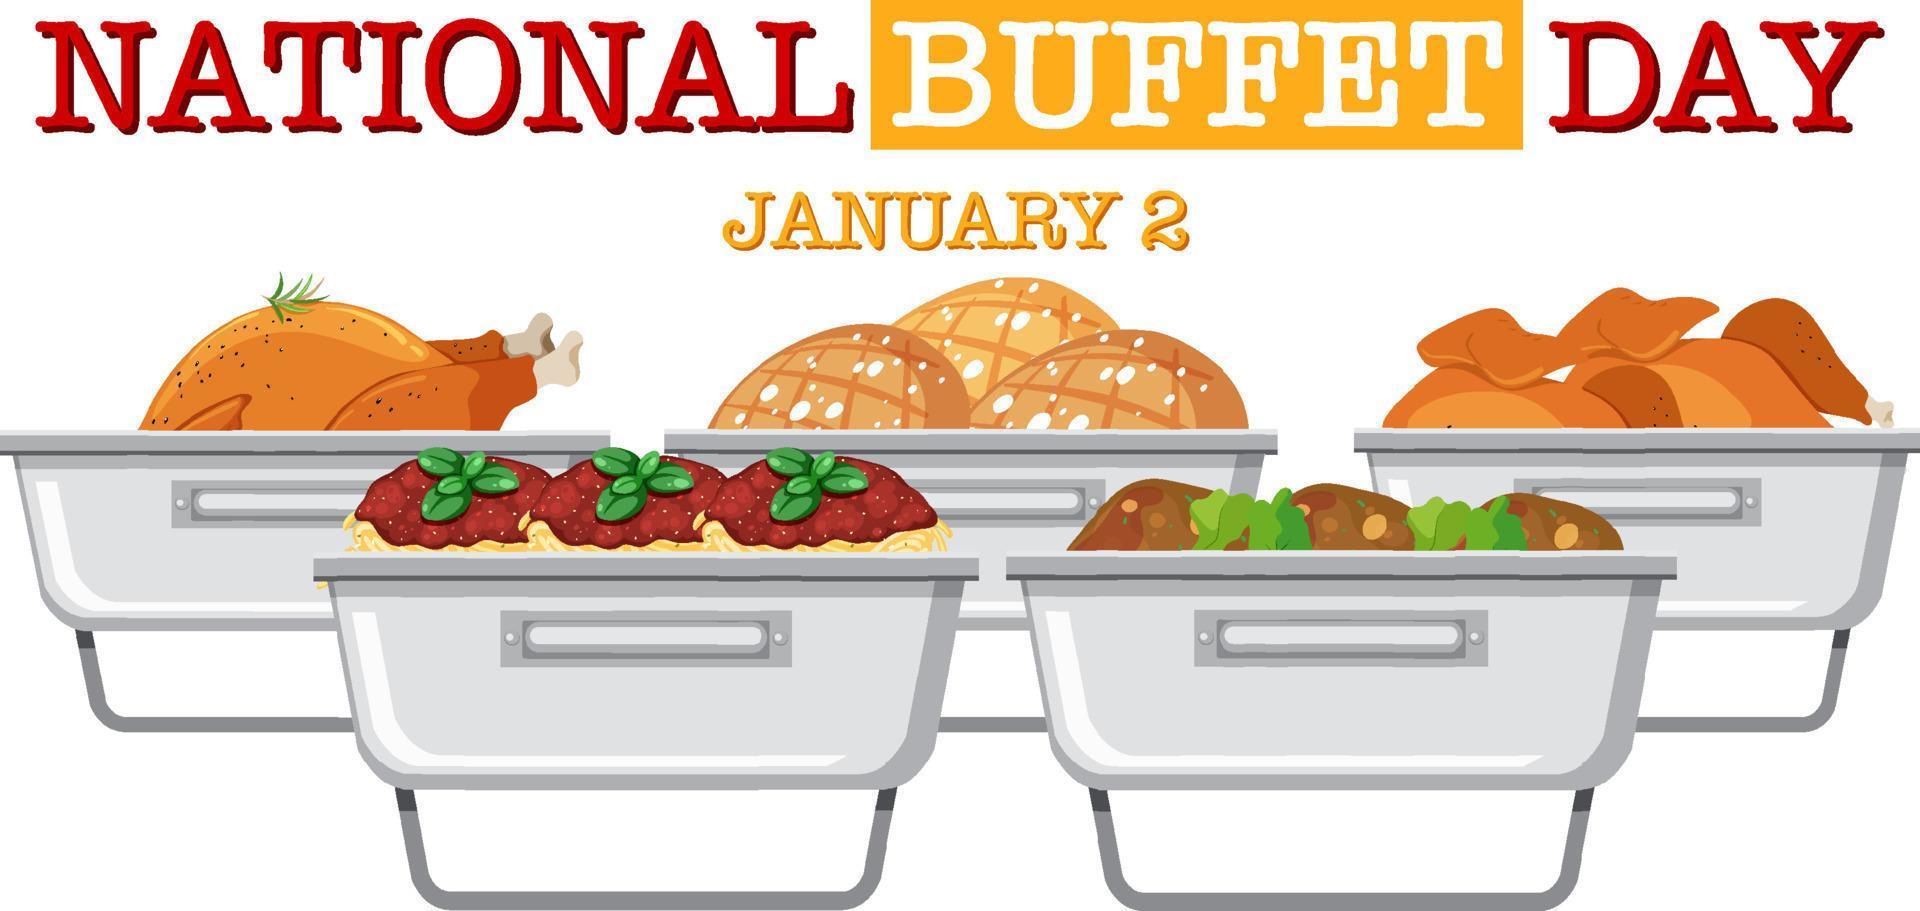 National Buffet Day Text Banner Design vector